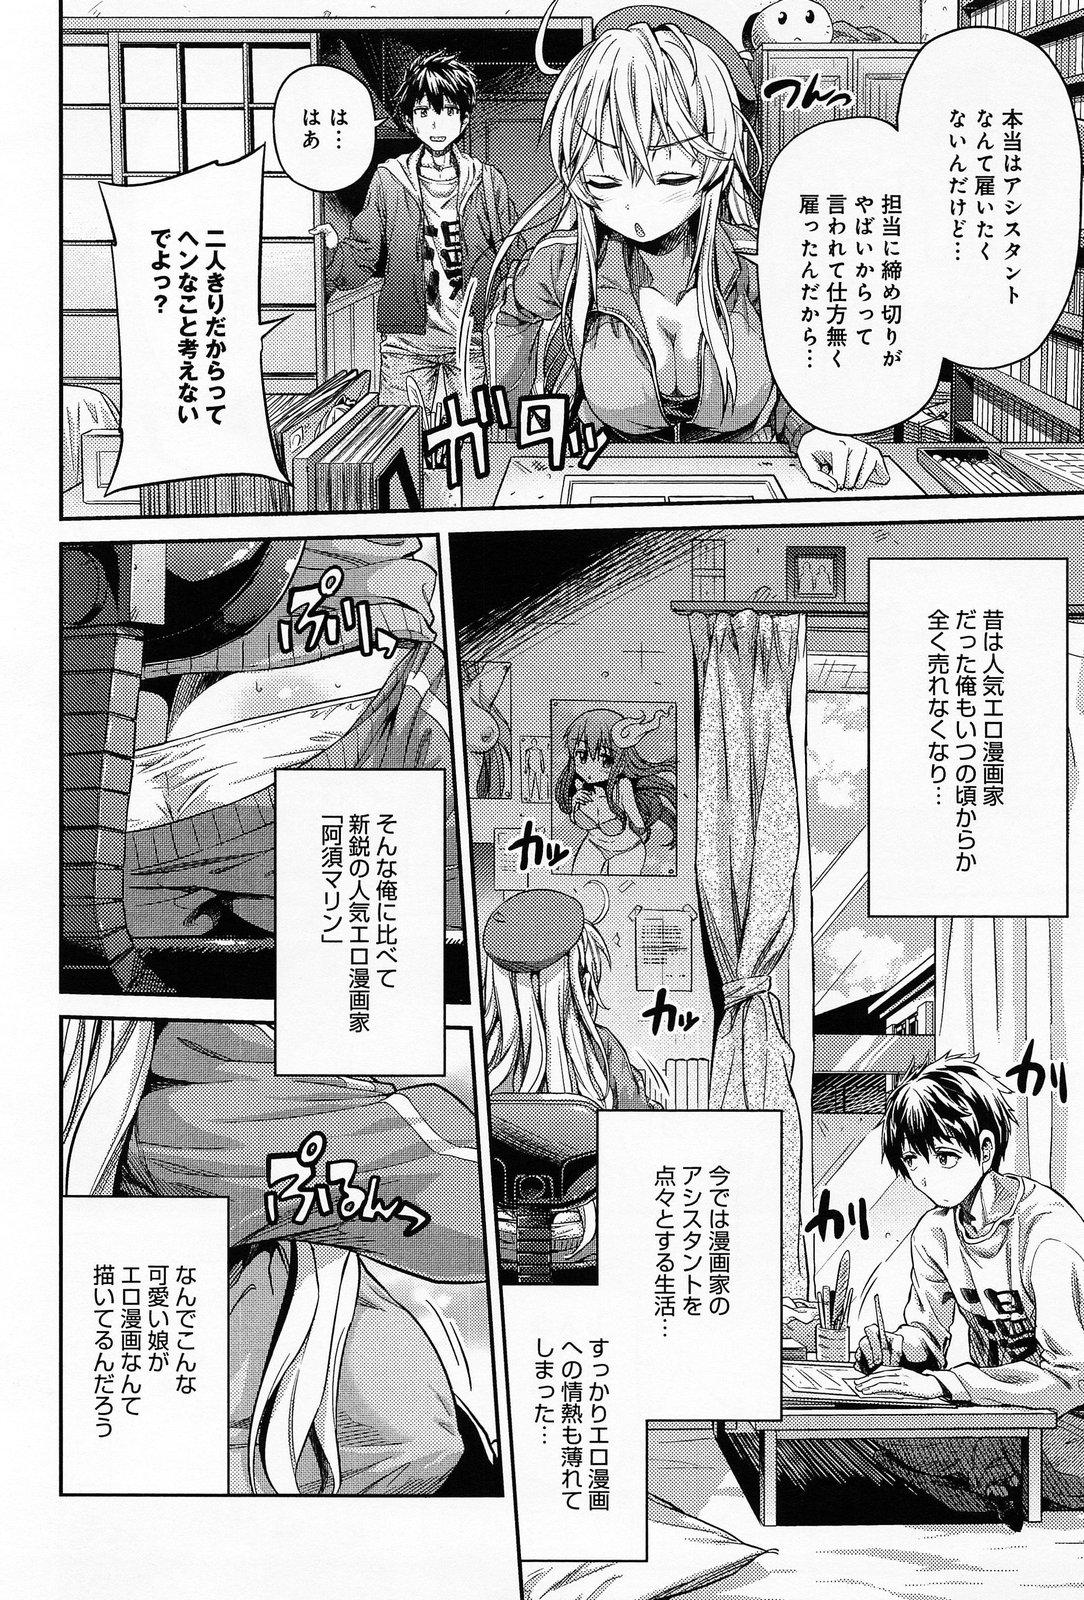 Handjob Man × Koi Ero Manga de Hajimaru Koi no Plot Ethnic - Page 2